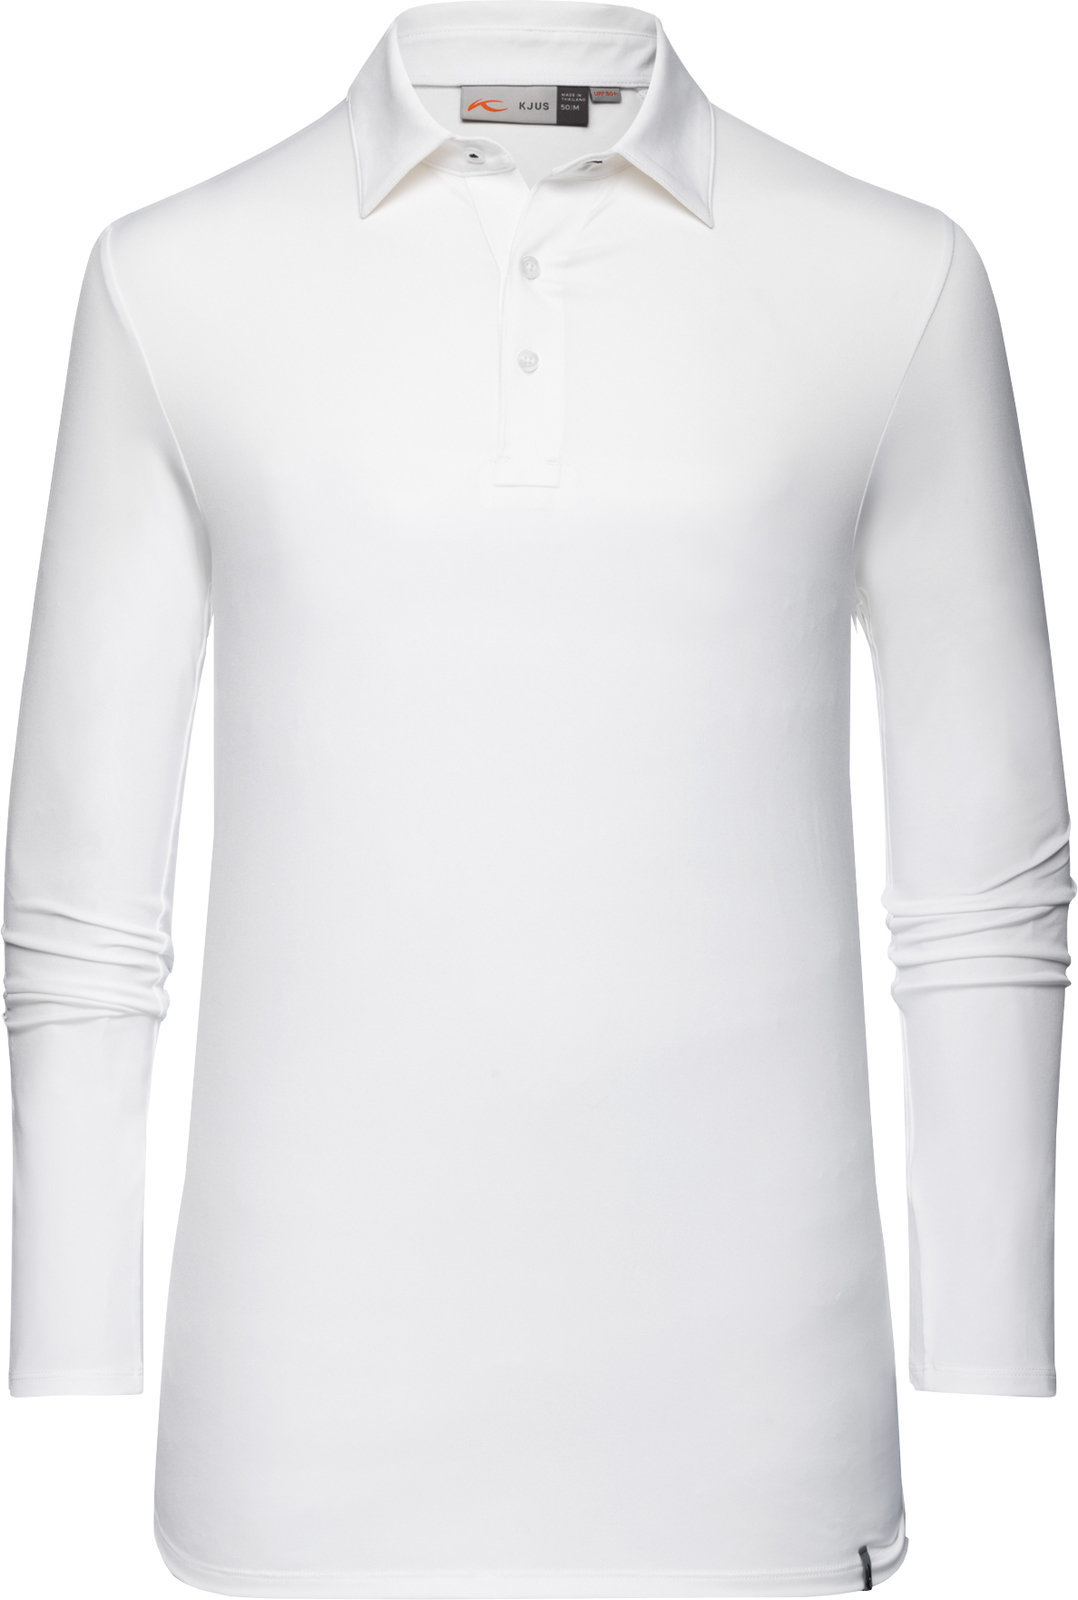 Koszulka Polo Kjus Soren Solid White 54